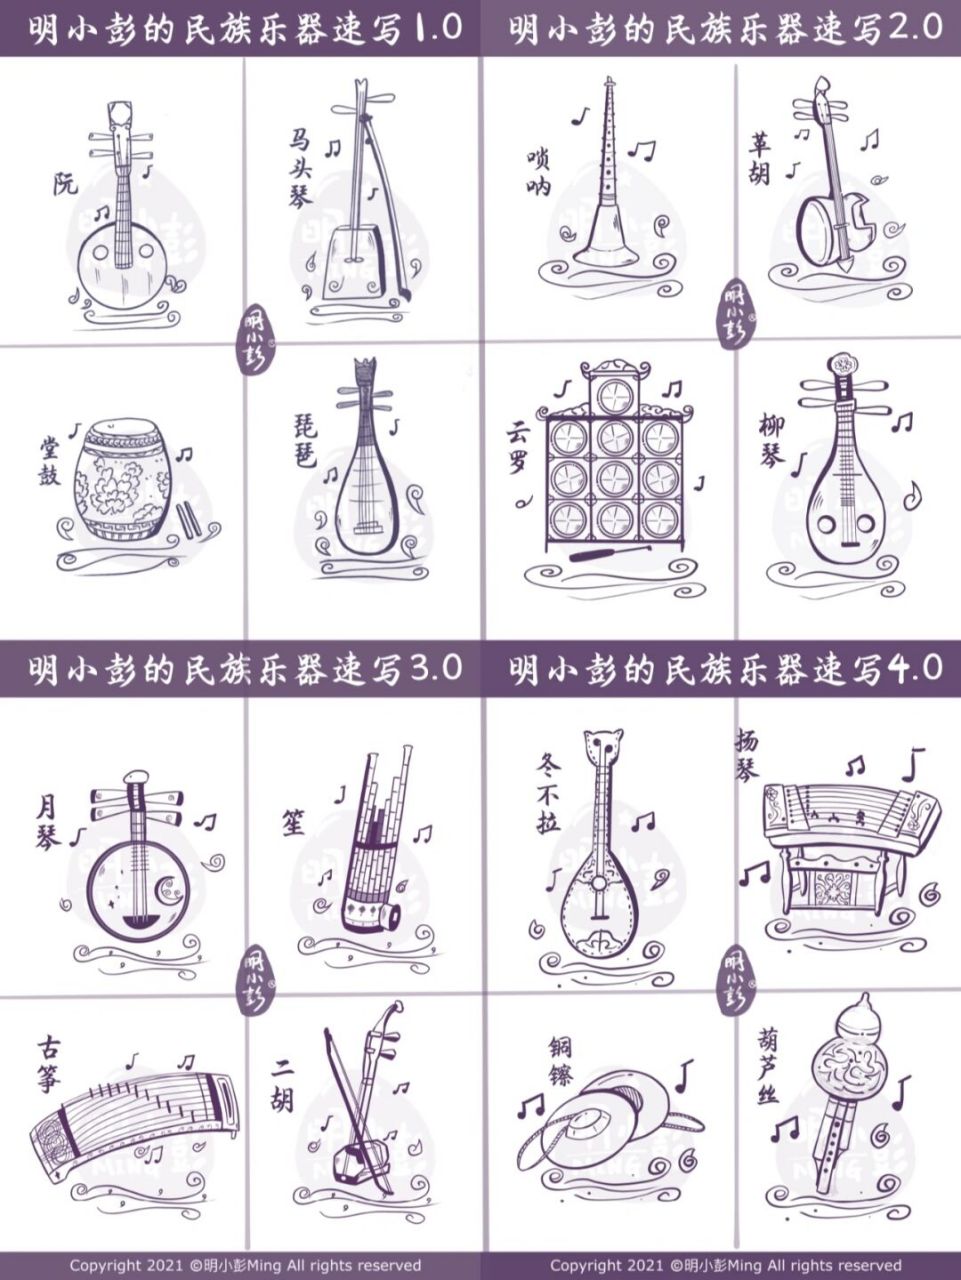 明小彭的民族乐器速写合集